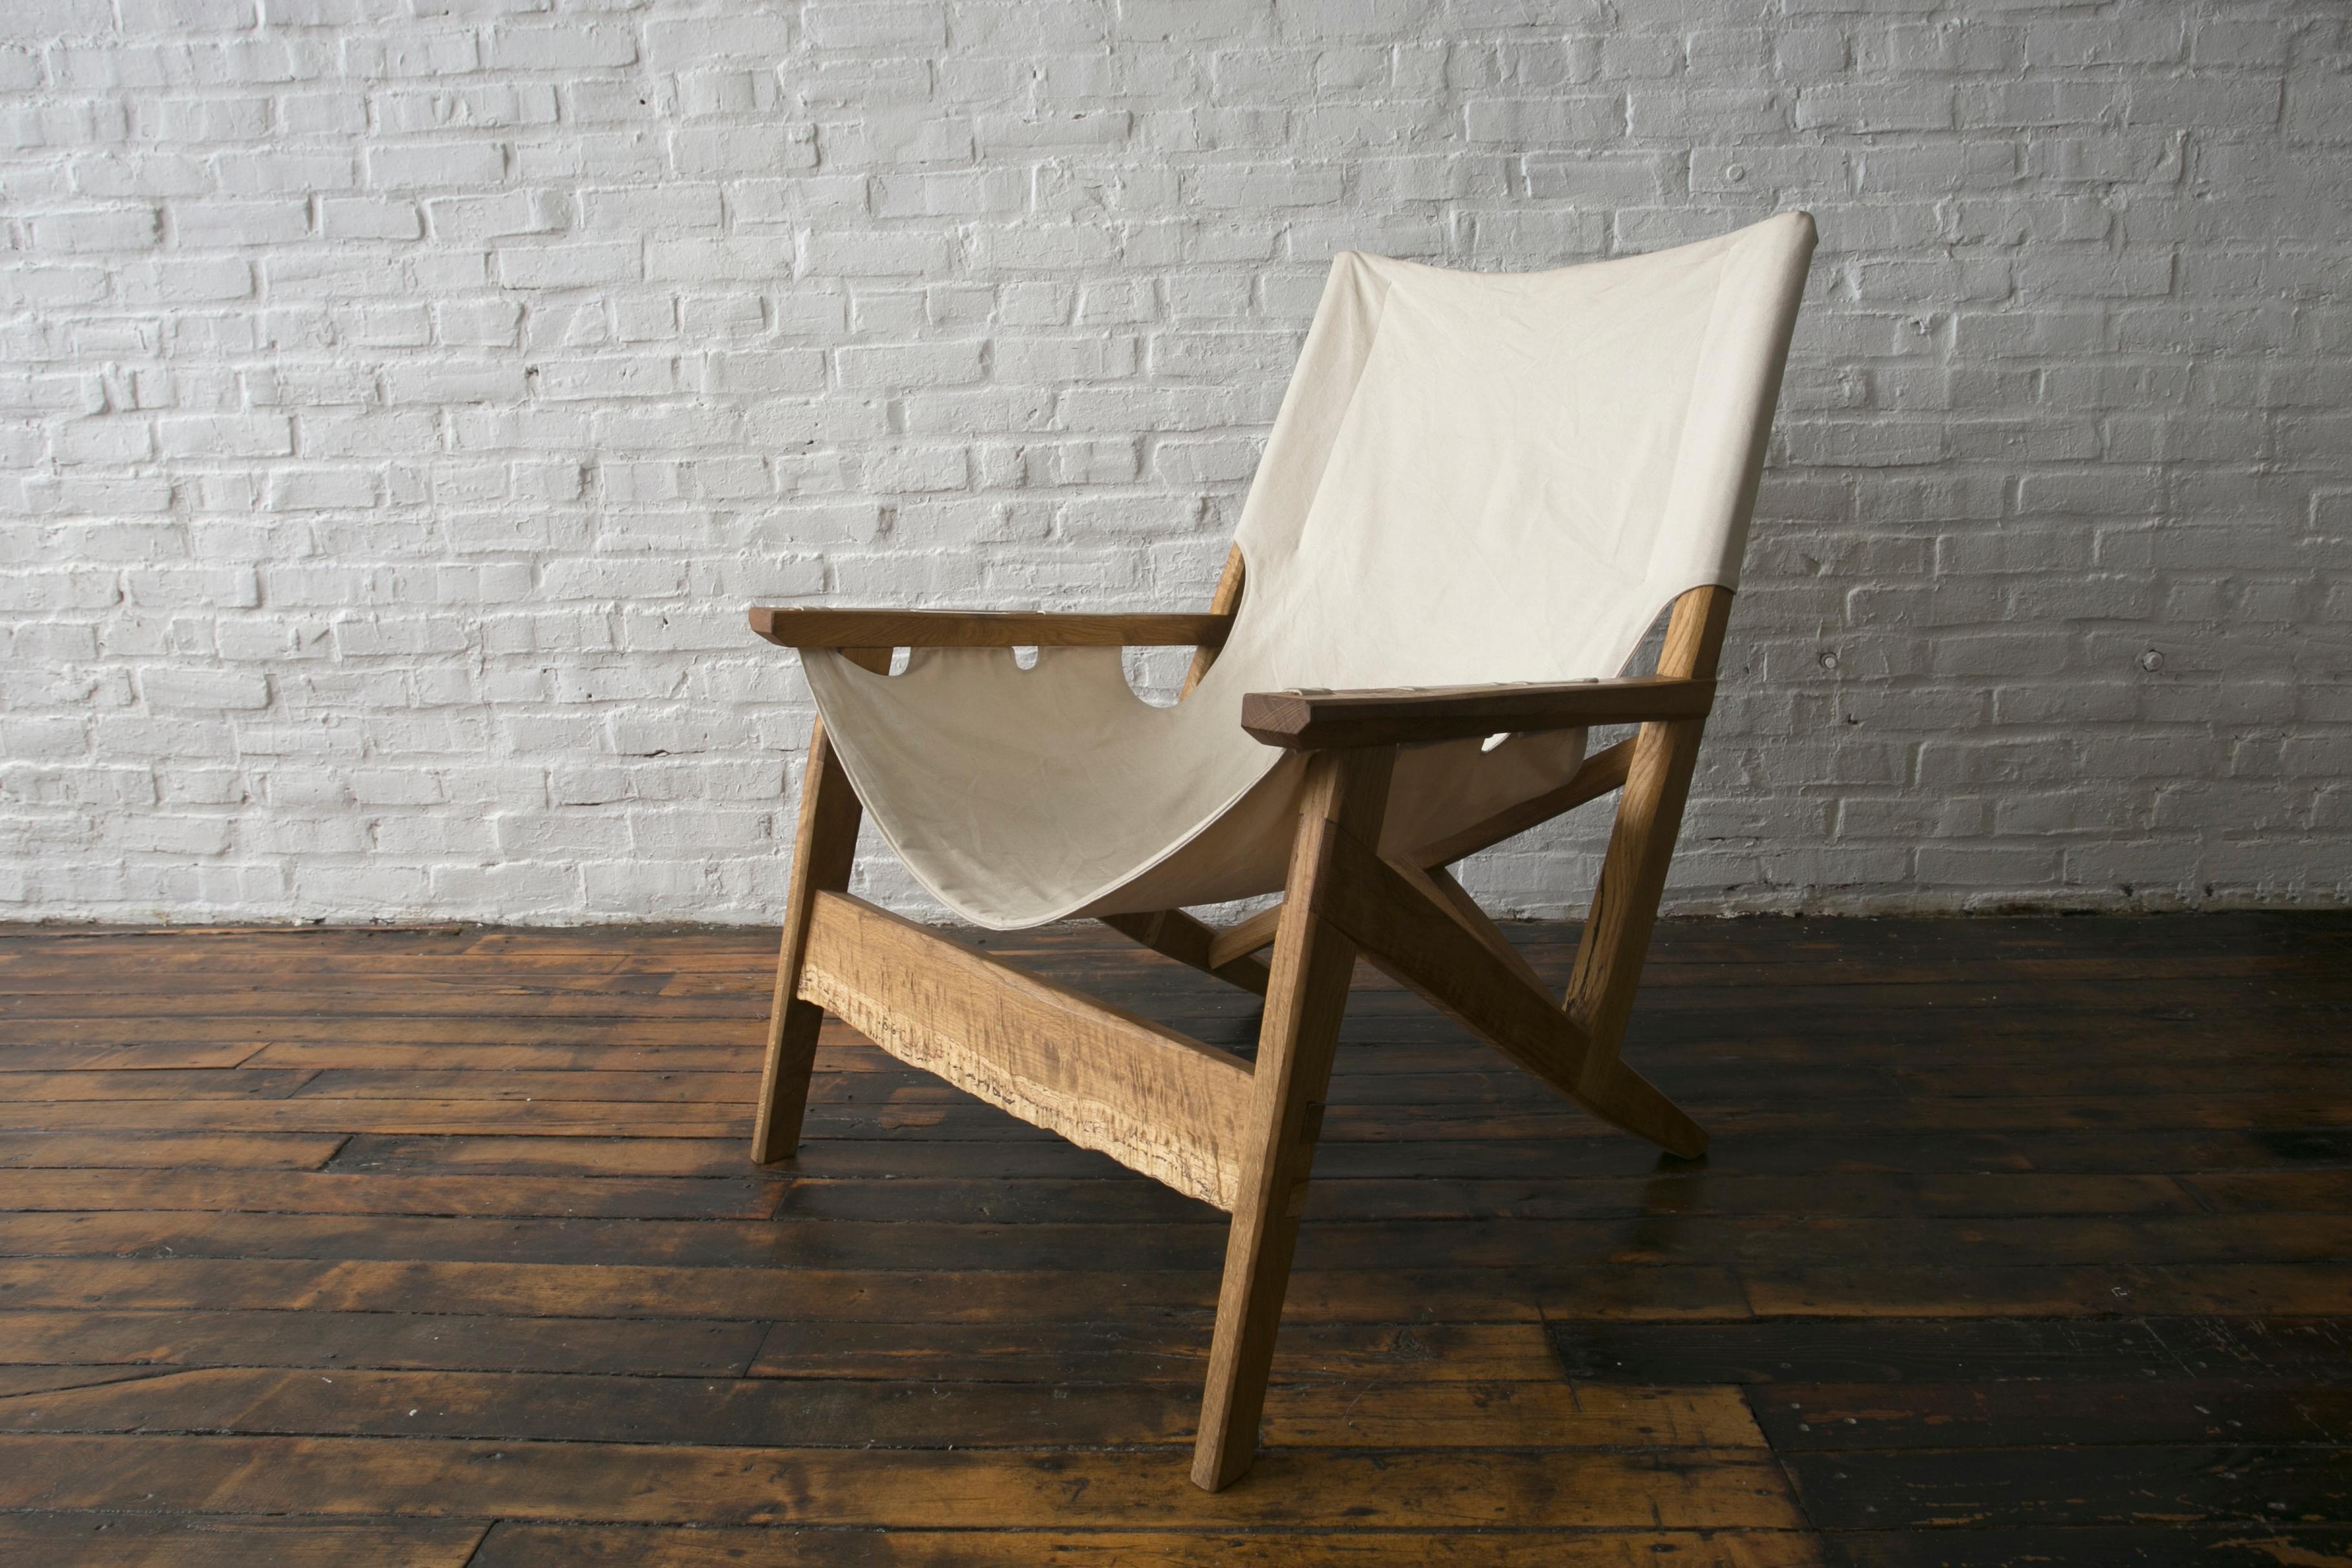 Nuestro original diseño de silla eslinga está hecho con el objetivo de tener una silla sostenible que combine comodidad y belleza. El marco se inspira en el diseño danés y está hecho a mano de forma que pueda desmontarse y volver a montarse cuando